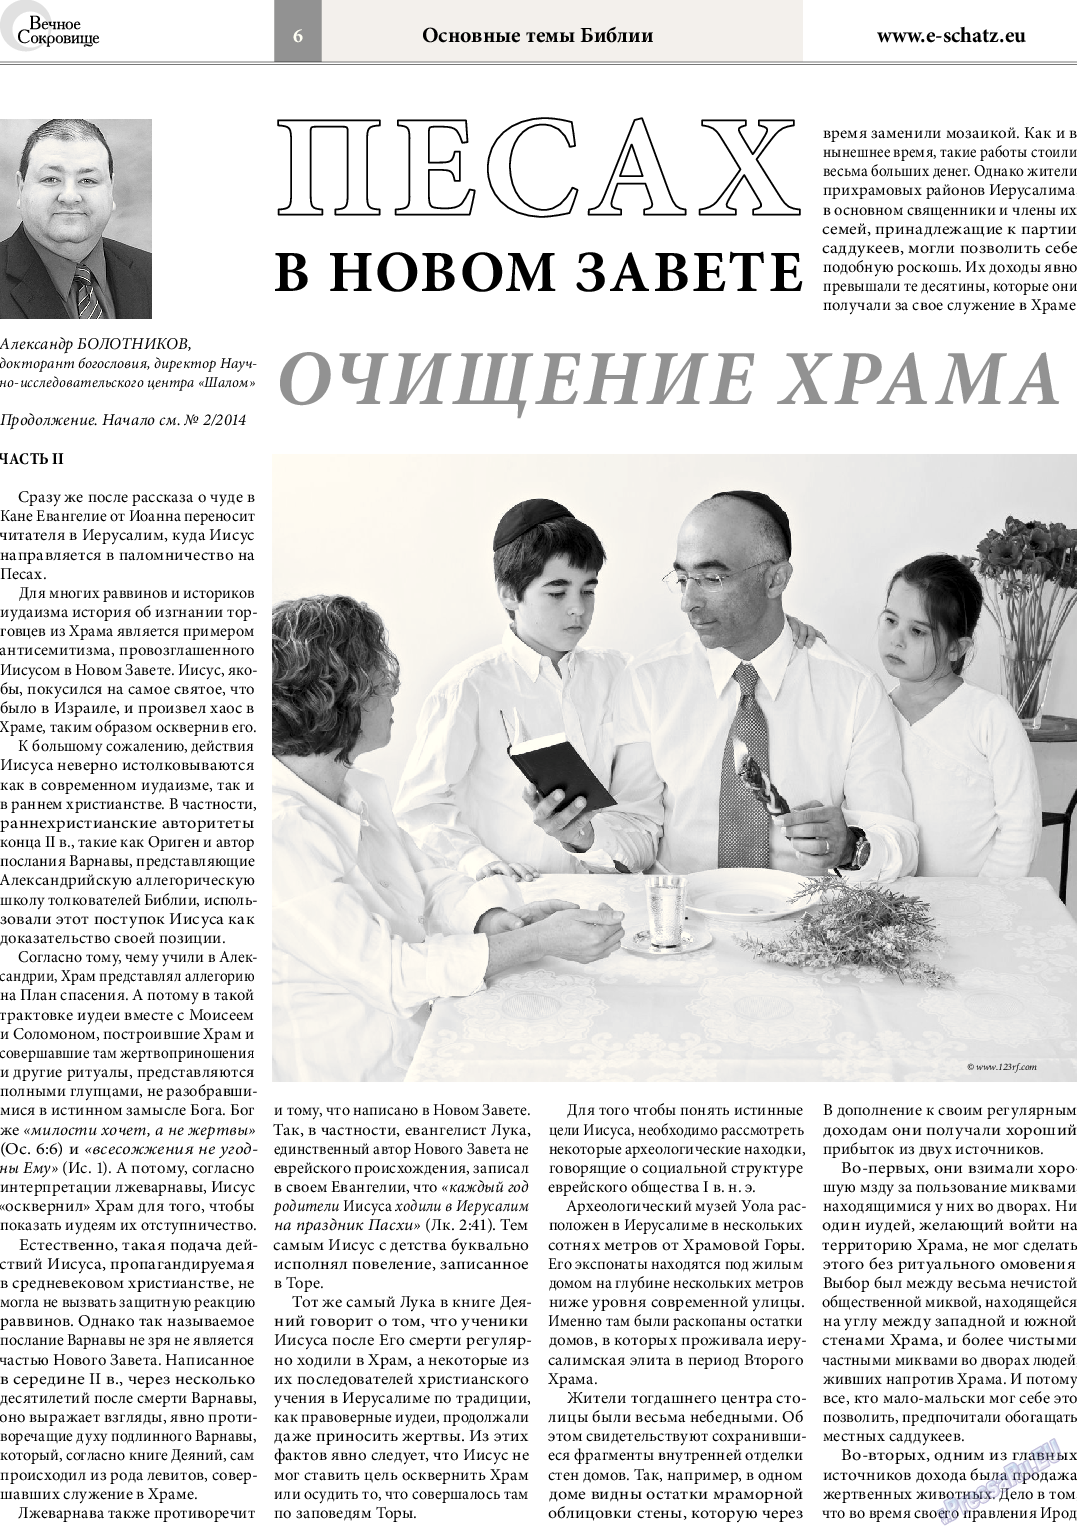 Вечное сокровище (газета). 2014 год, номер 3, стр. 6